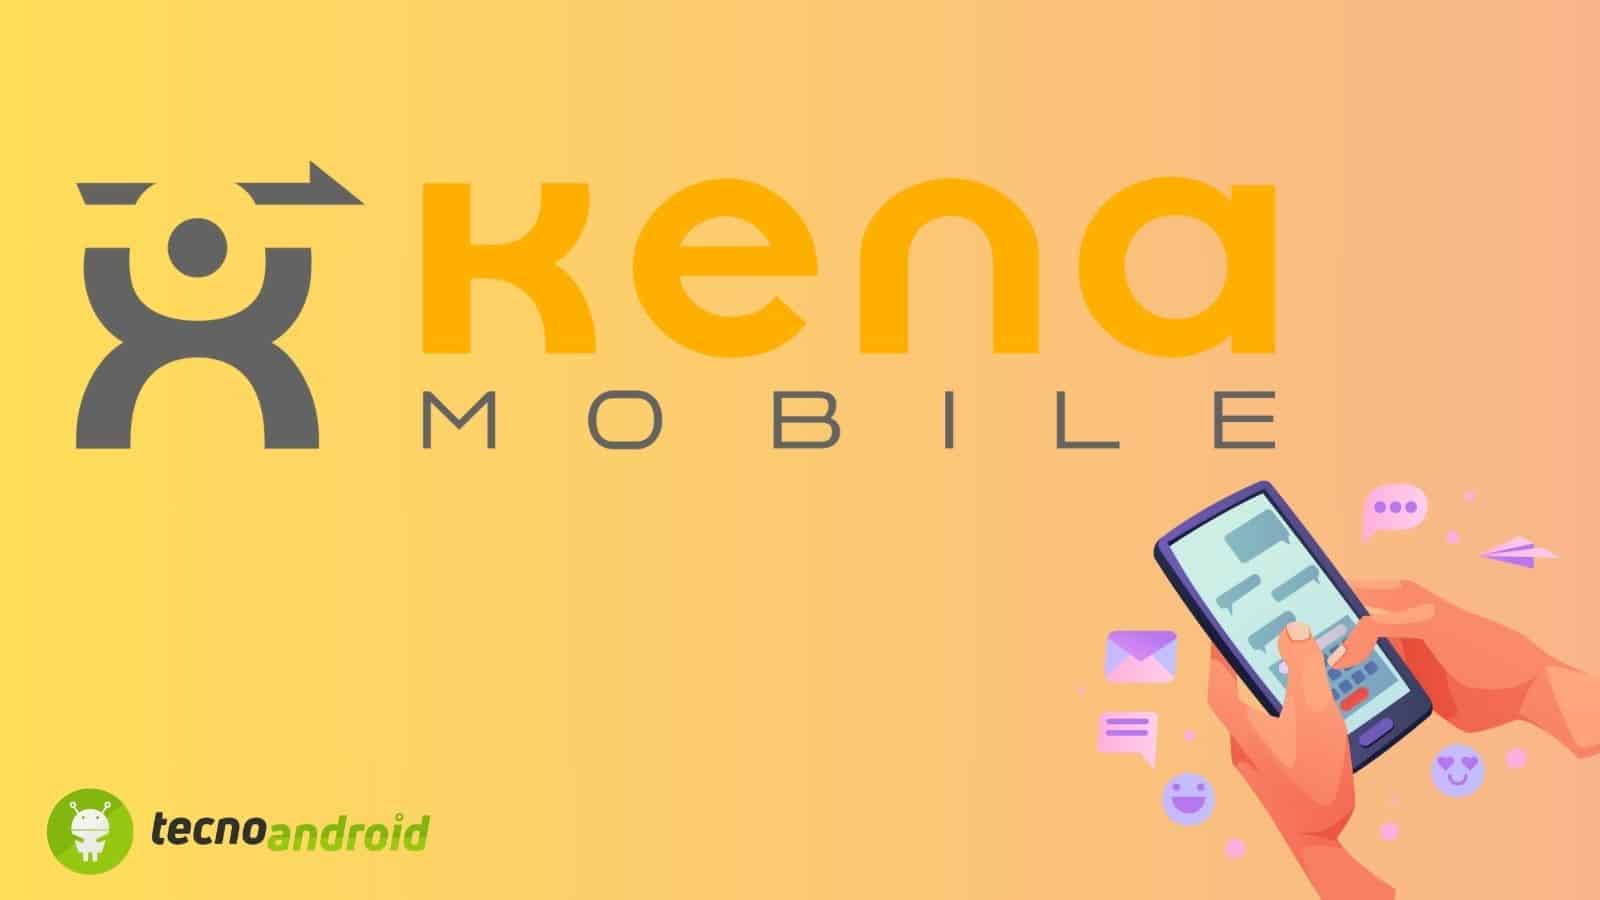 Kena Mobile sorprende i suoi utenti con innovazioni tecnologiche